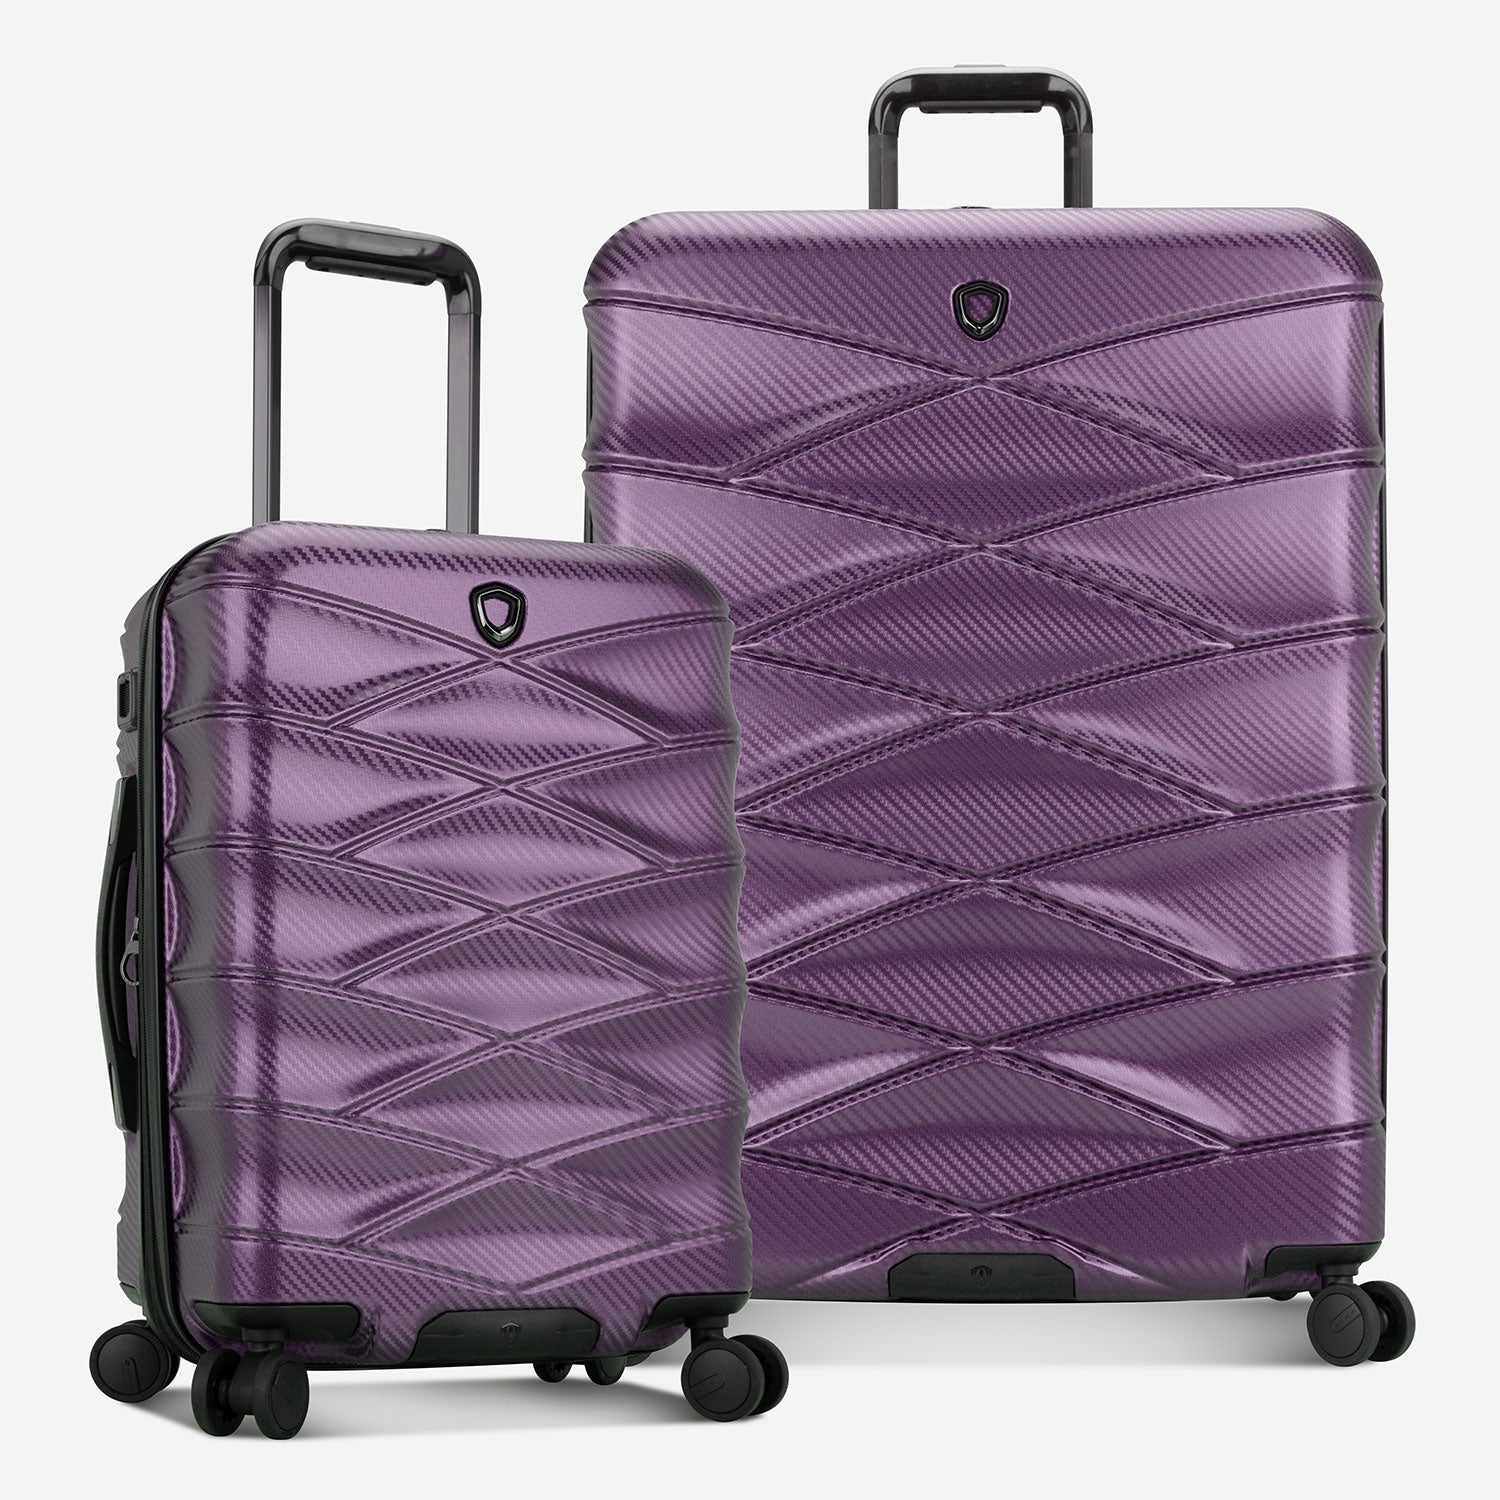 Purple luggage sets